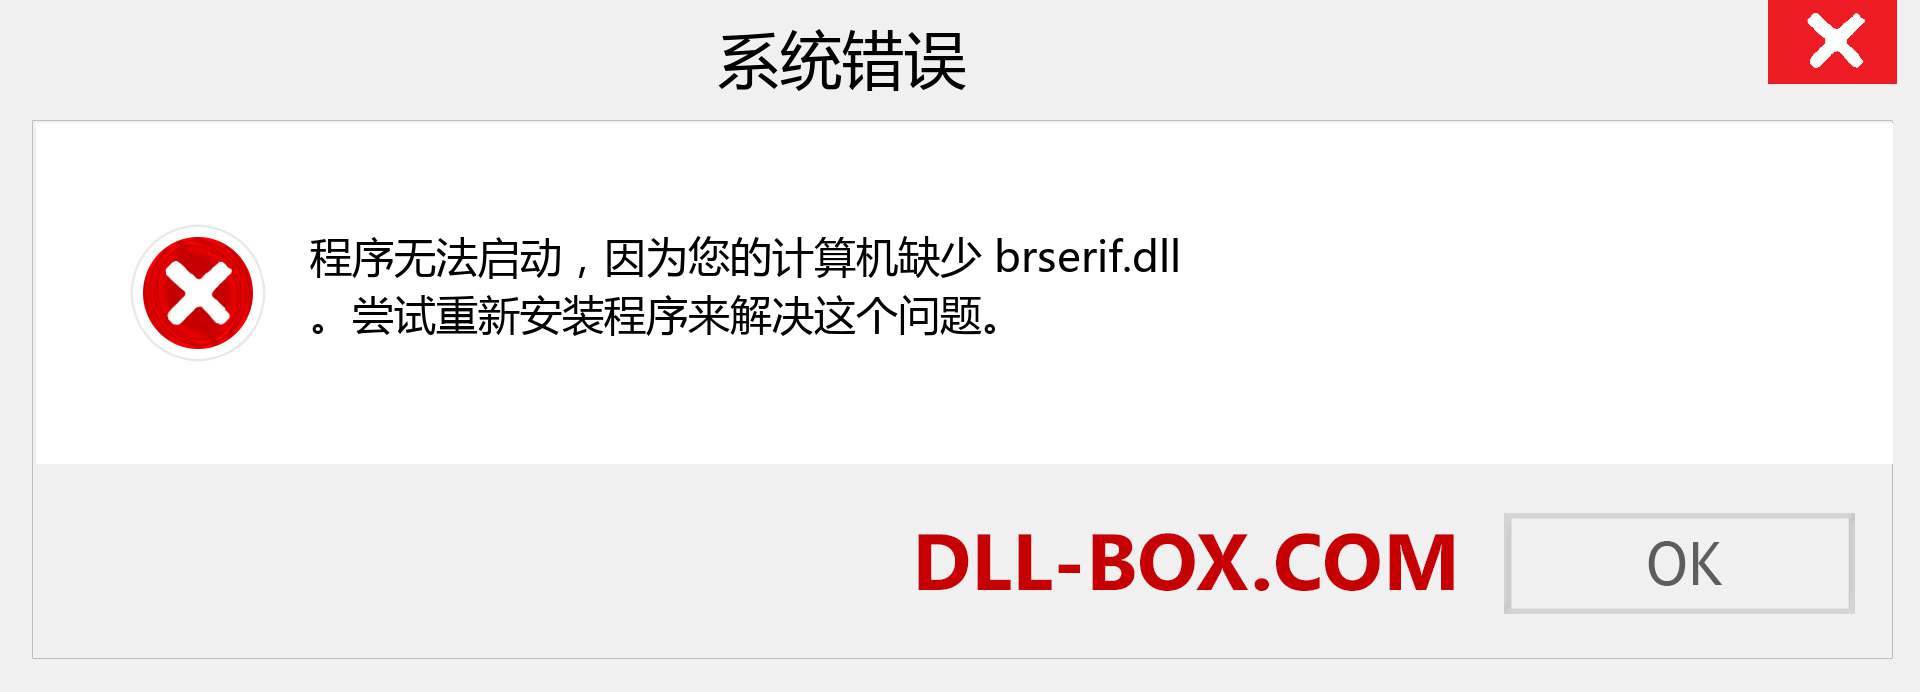 brserif.dll 文件丢失？。 适用于 Windows 7、8、10 的下载 - 修复 Windows、照片、图像上的 brserif dll 丢失错误